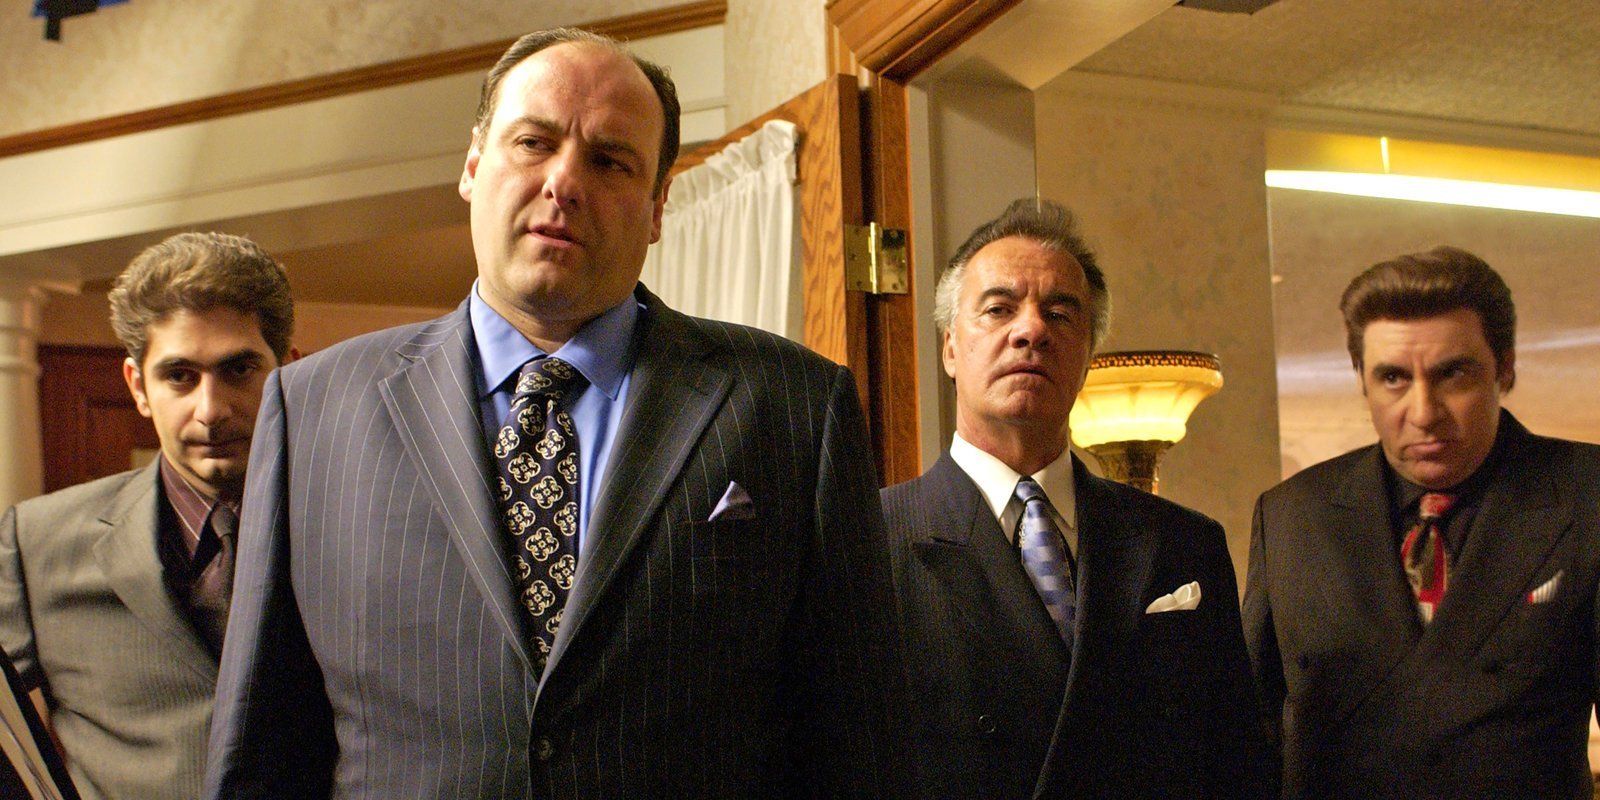 Tony Soprano and associates in The Sopranos 